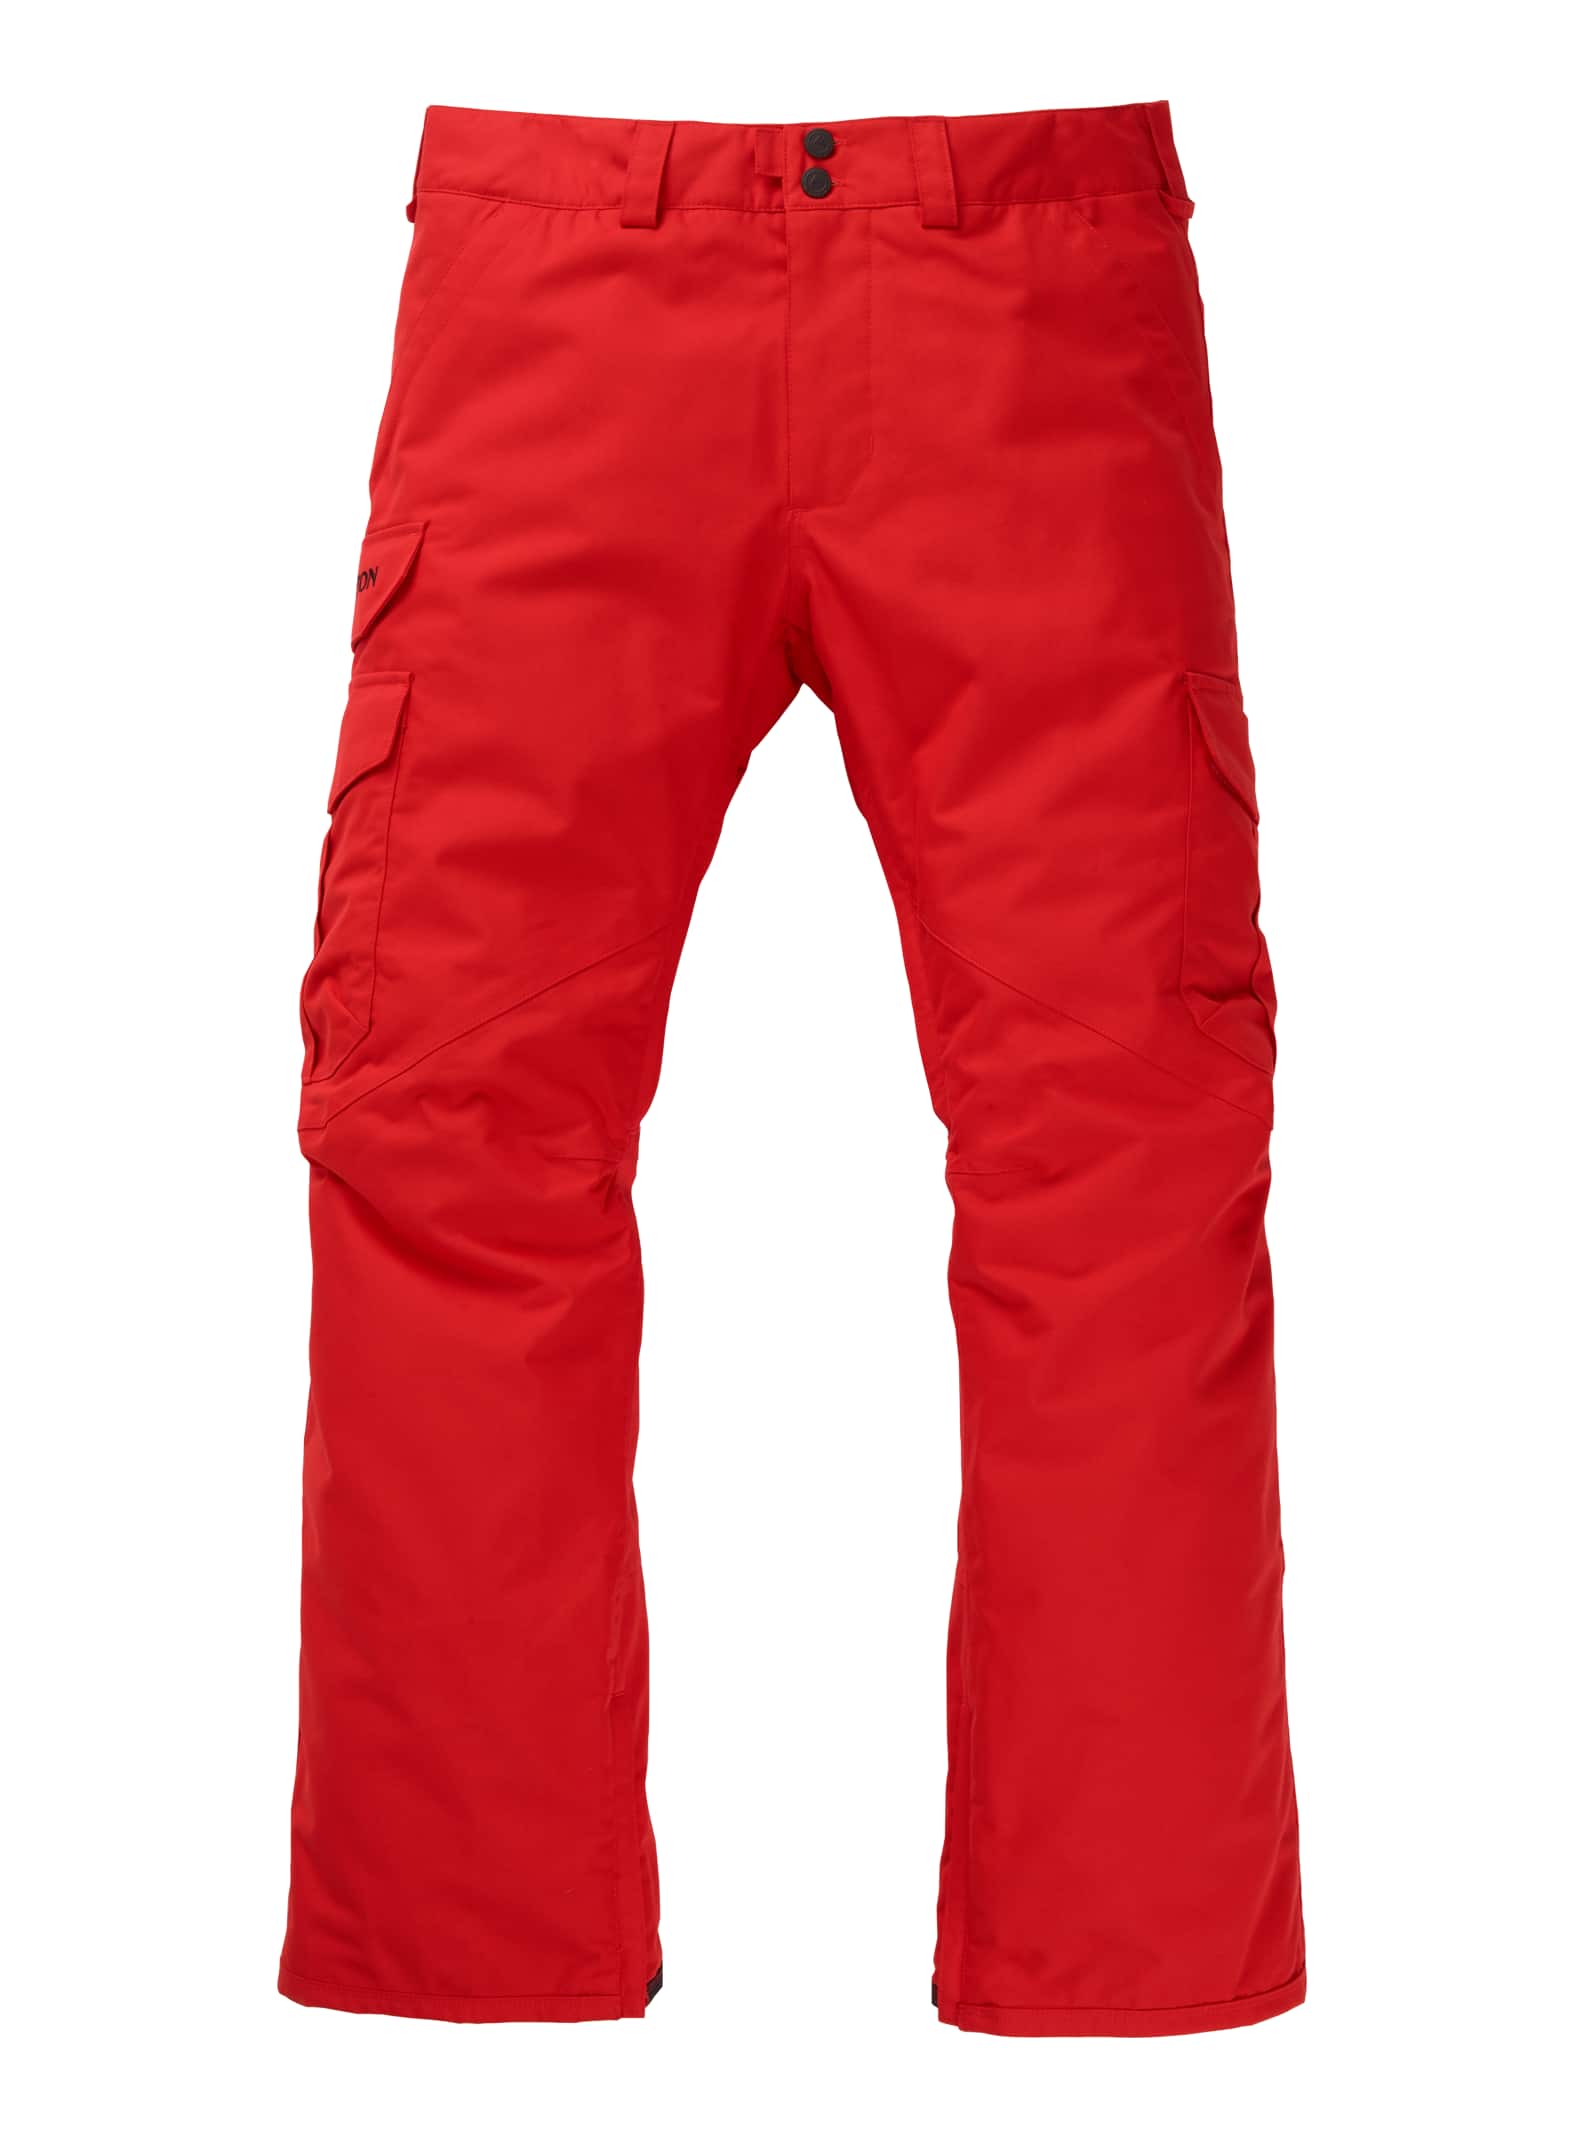 Burton - Pantalon cargo coupe classique homme, Flame Scarlet, XL